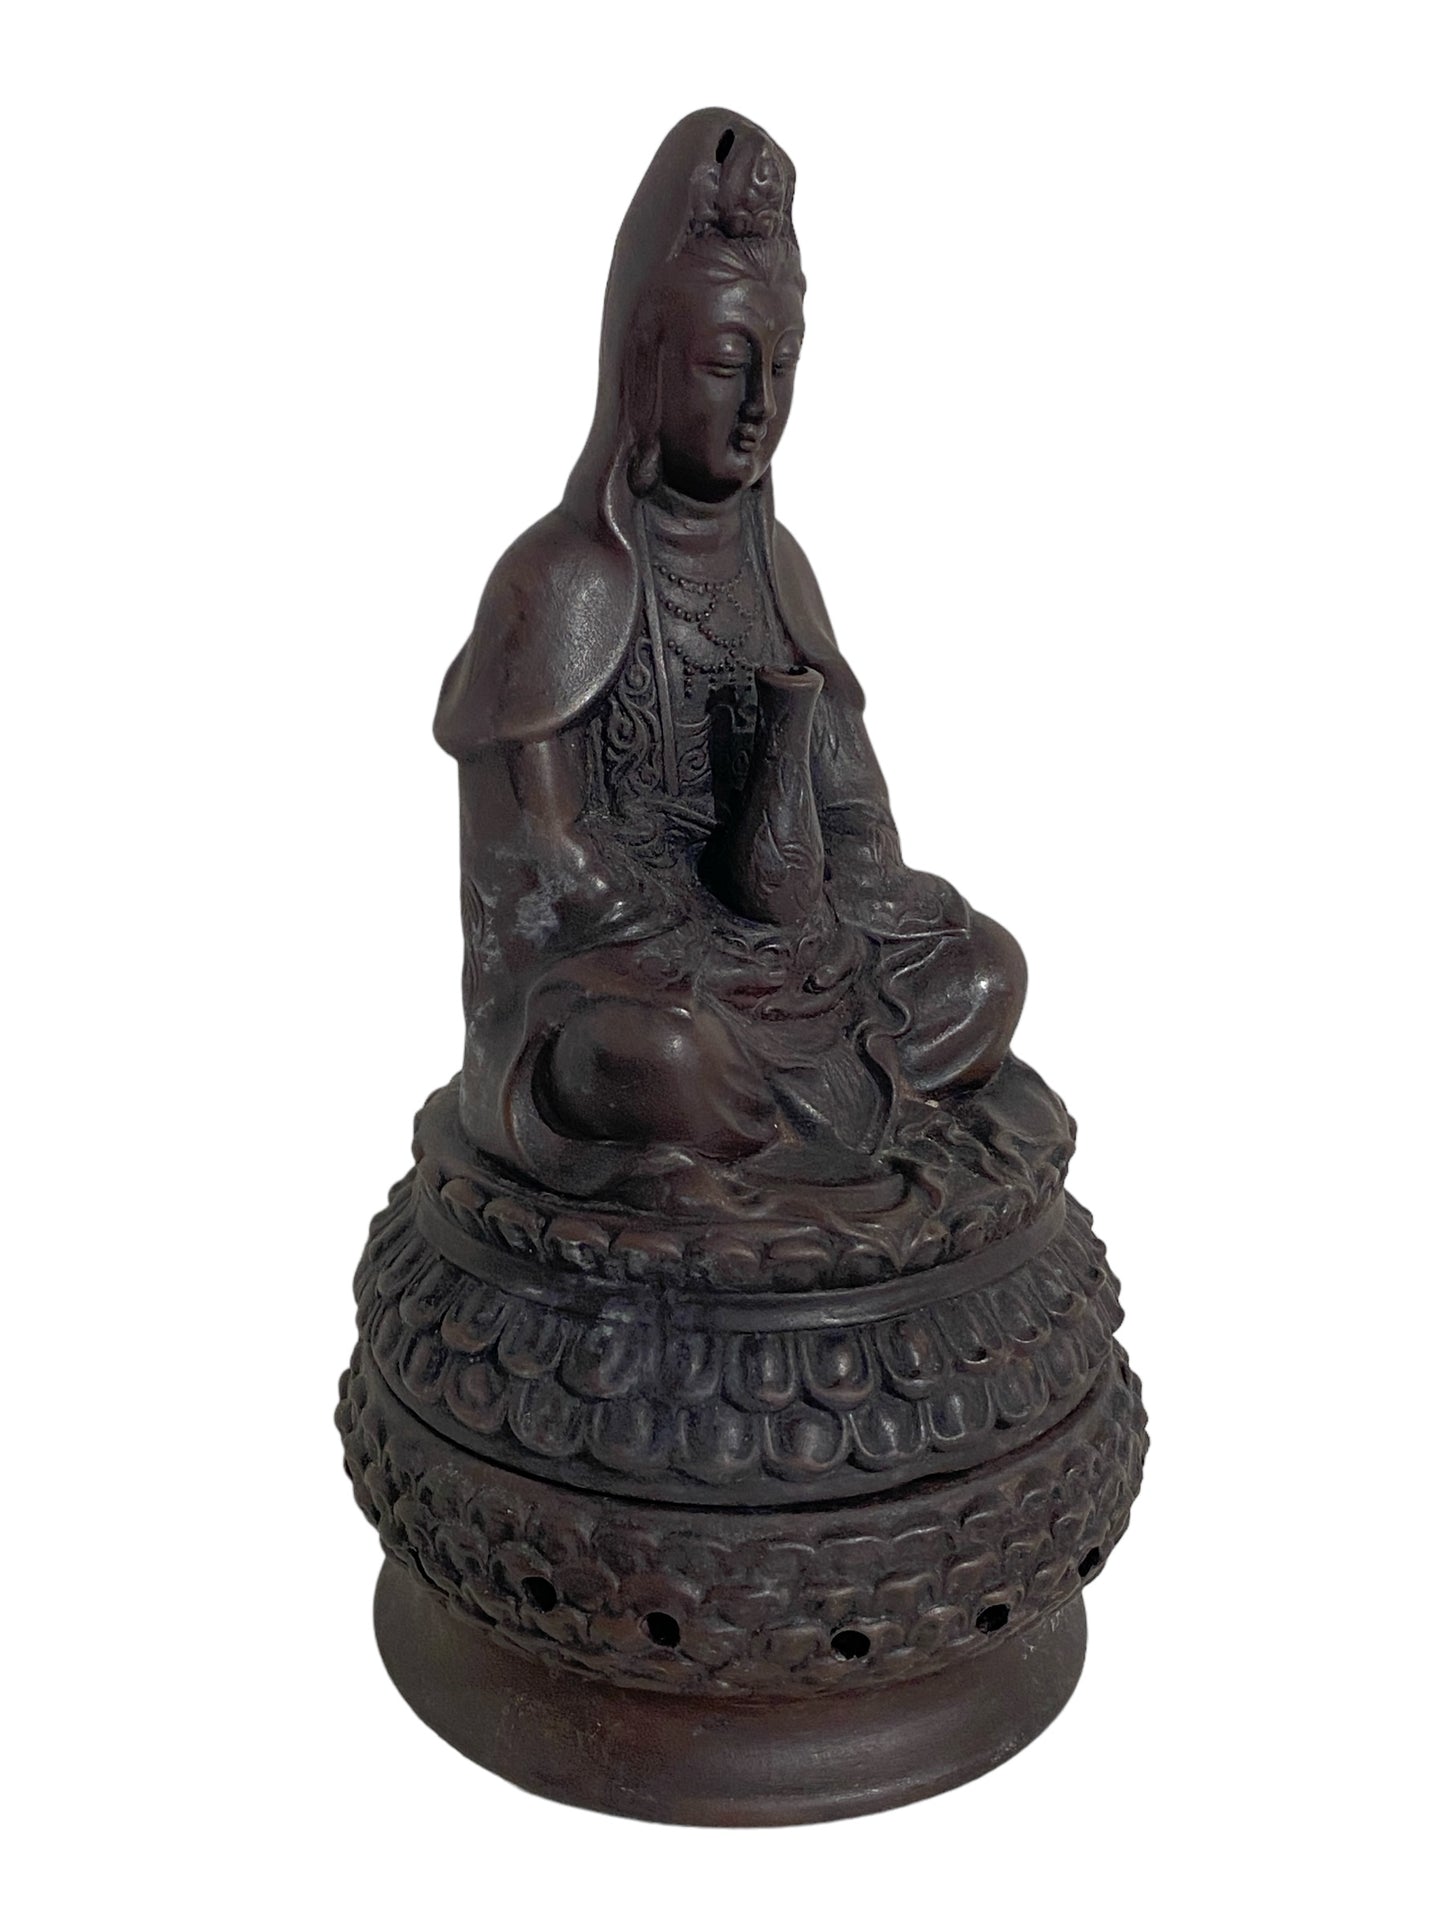 #5140 Chinoiserie Ceramic Healing Bodhisattva/Quan Yin Incense Burner